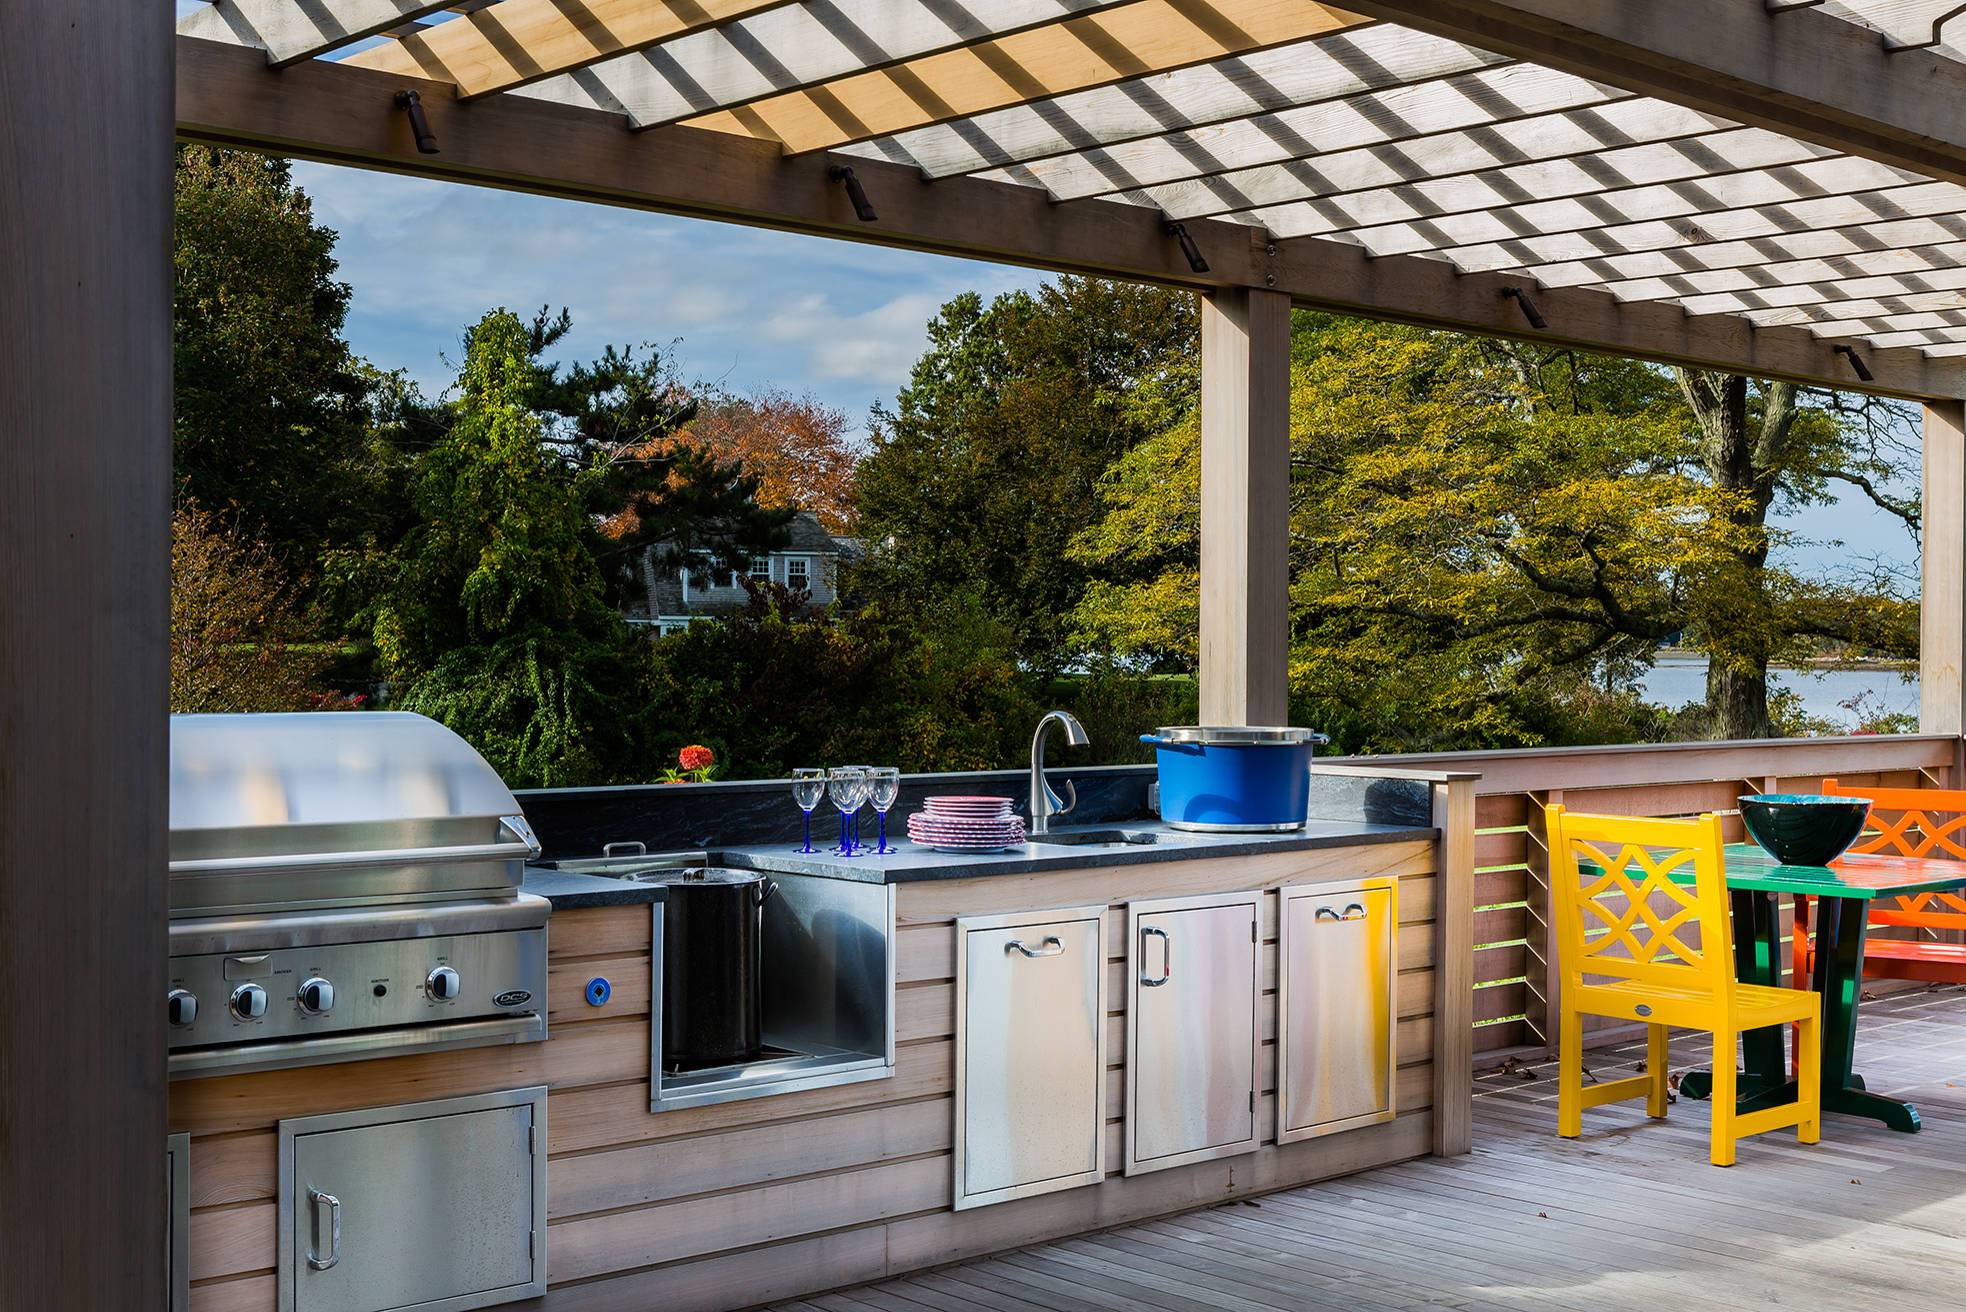 Фундамент летней кухни - топ-100 фото идей летних кухонь. советы по монтажу, возведению стен и крыши. внутренние работы и дизайн летней кухни на даче